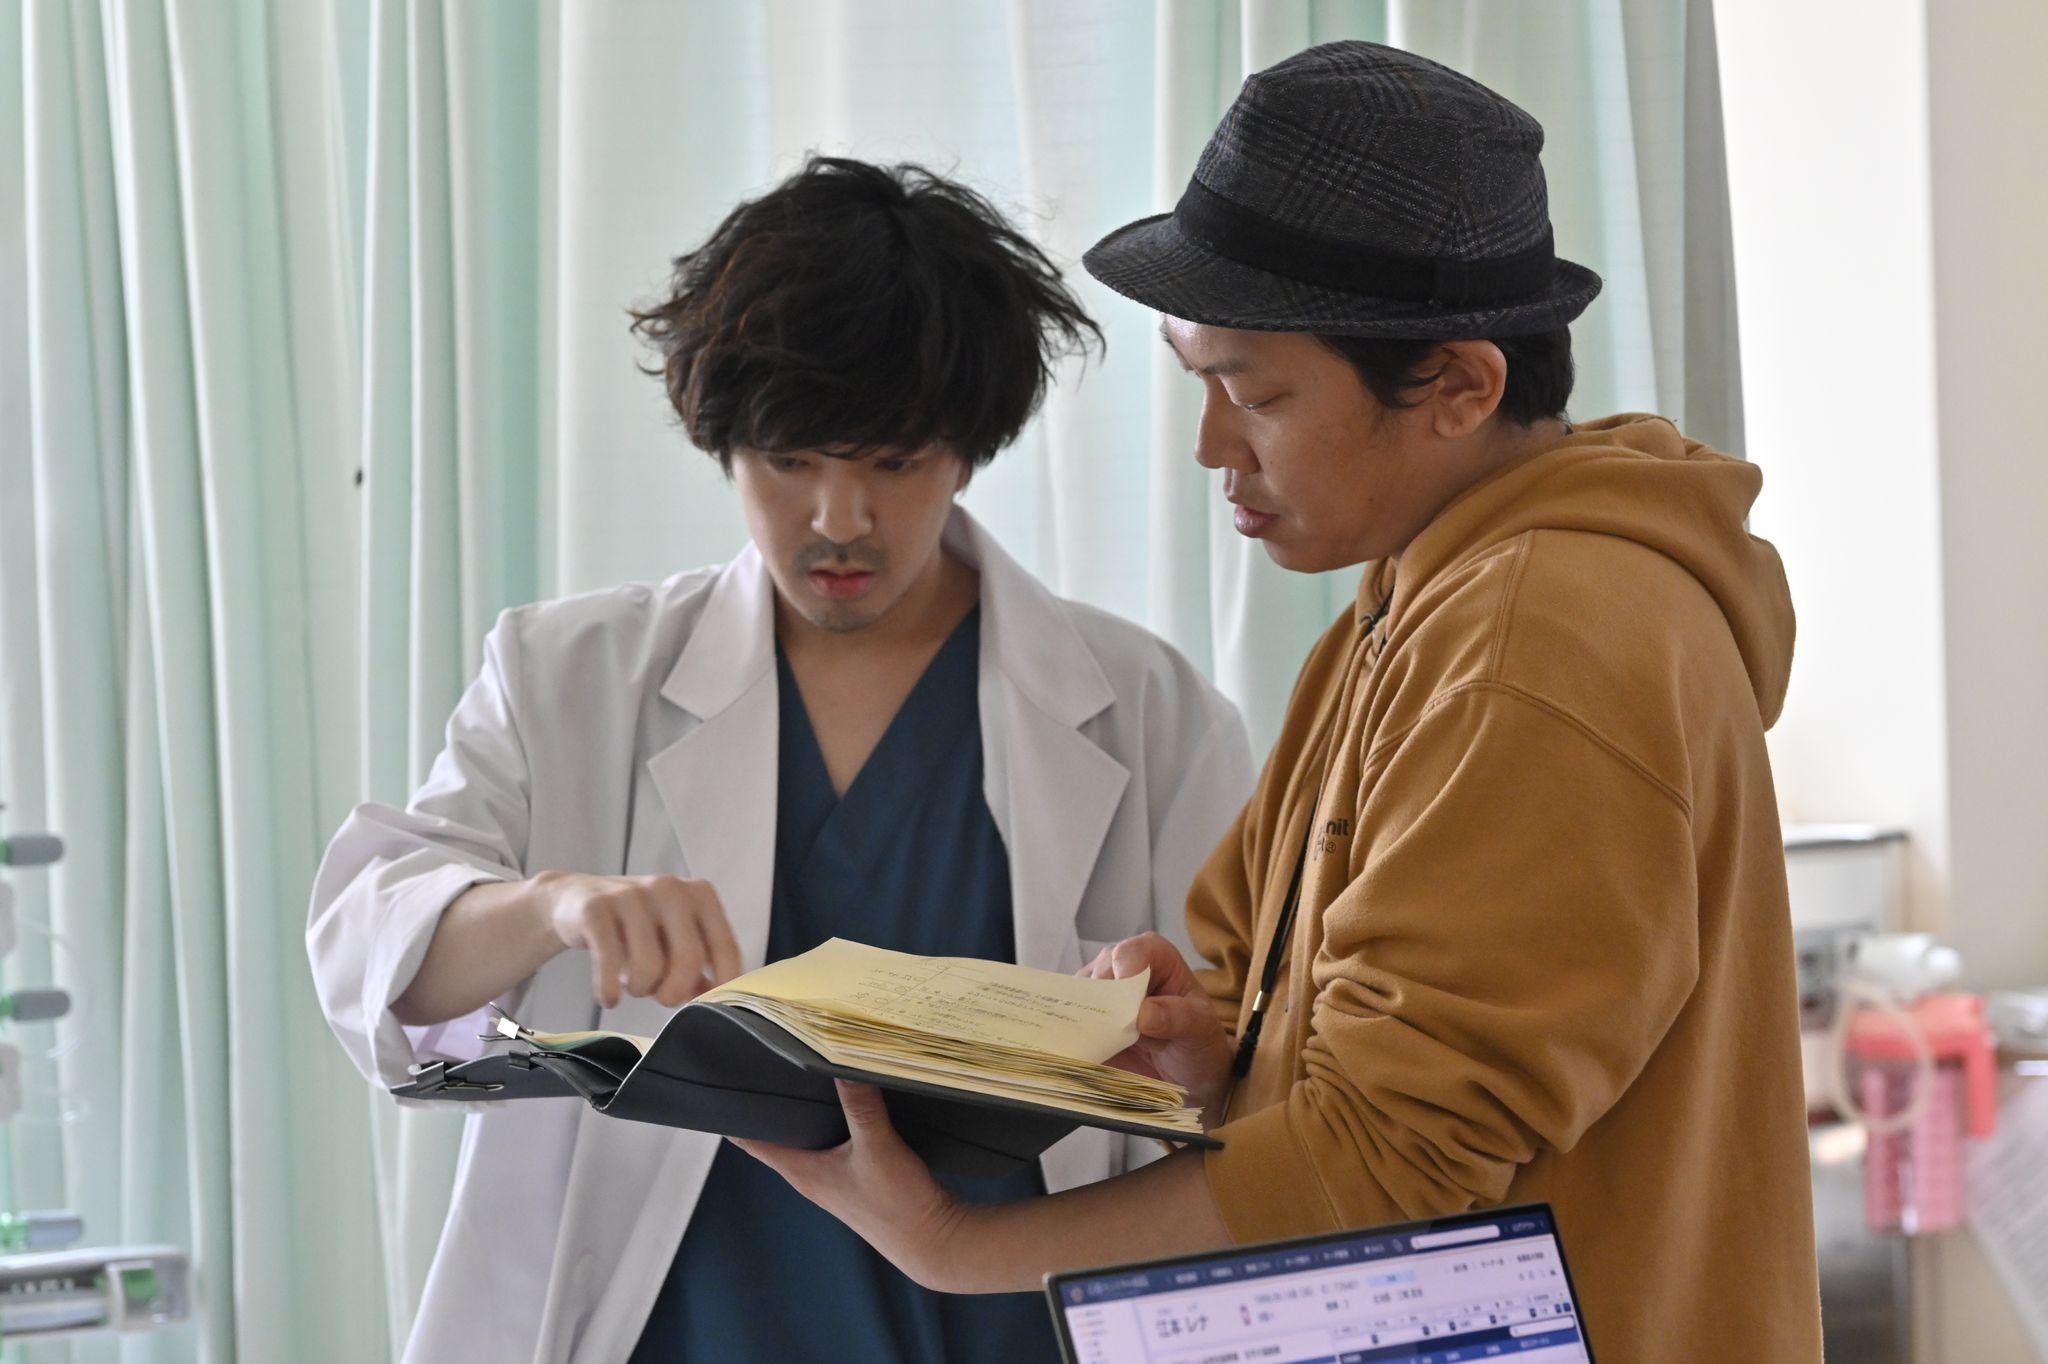 『アンメット ある脳外科医の日記』の若葉竜也とYuki Saito監督